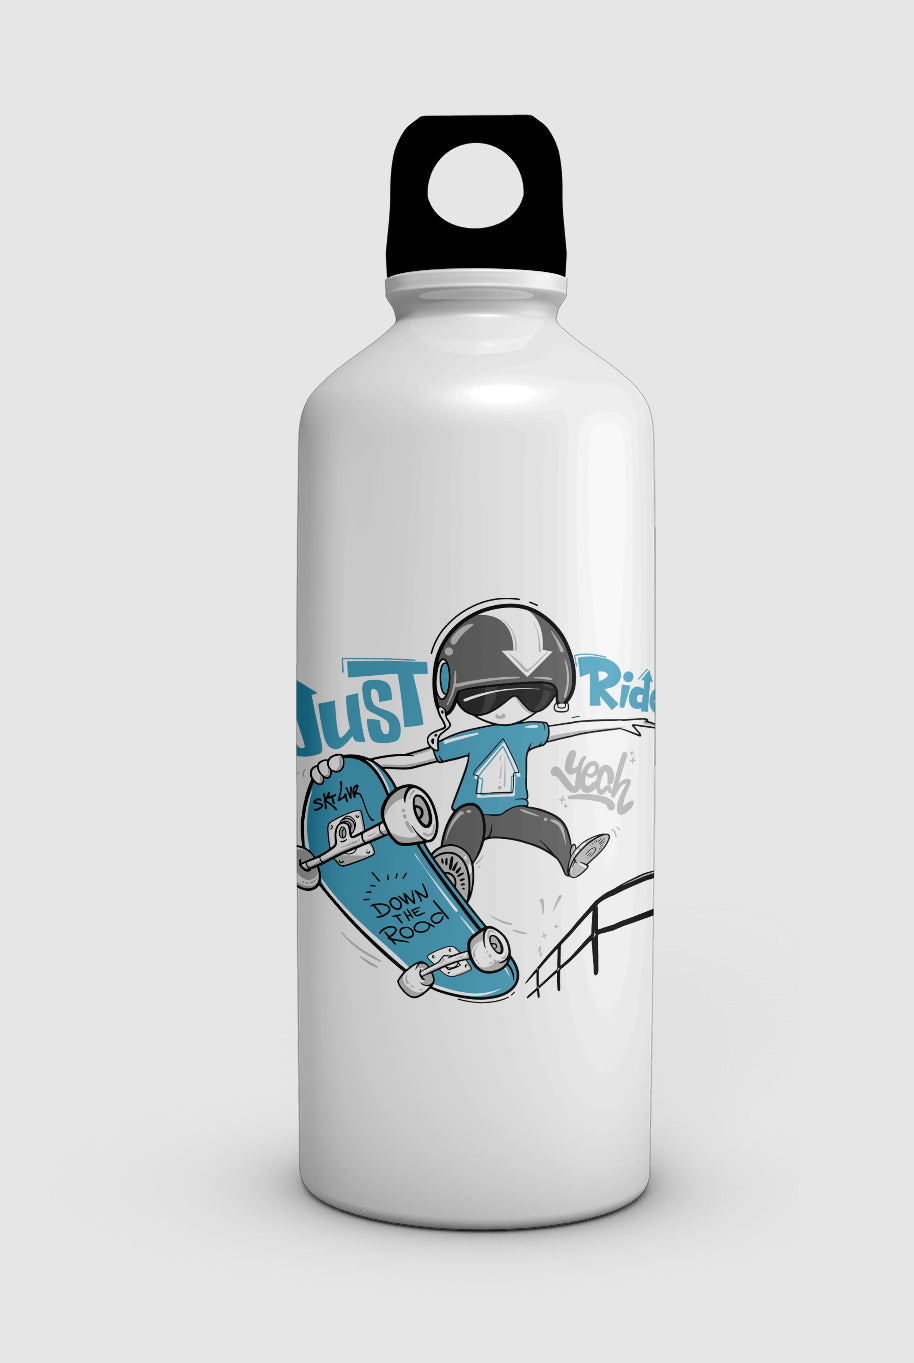 "SKATE" water bottle